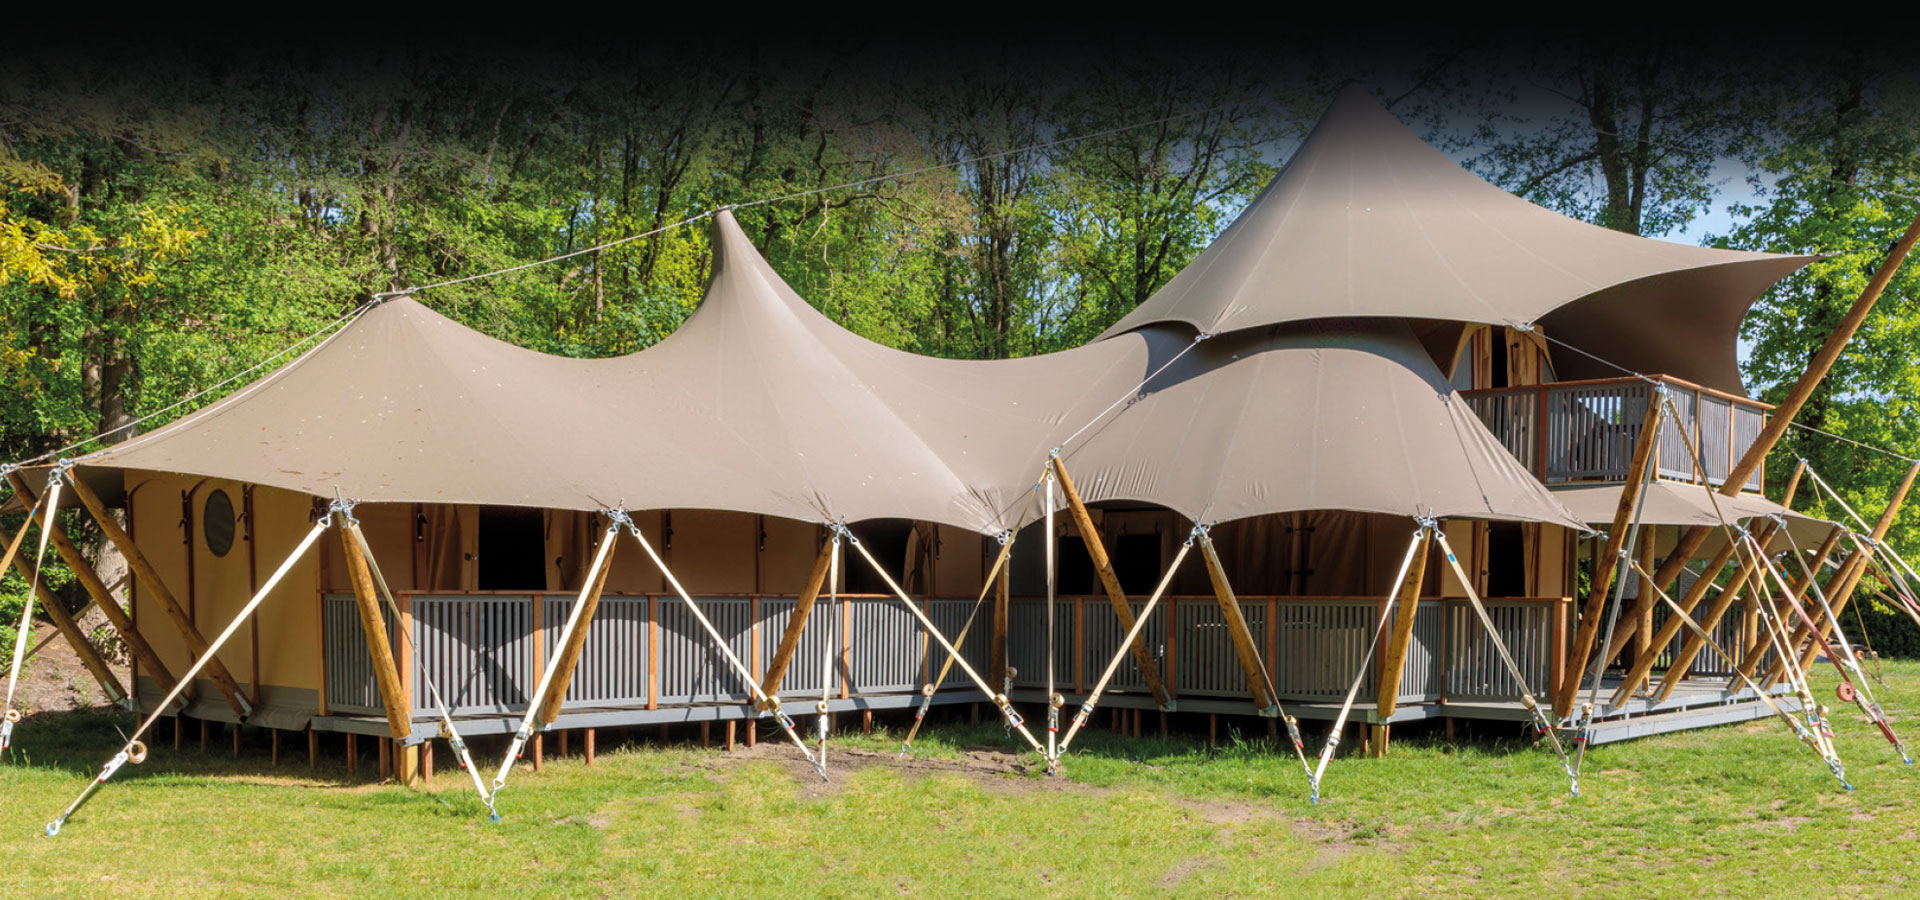 safari glamping tents for sale uk